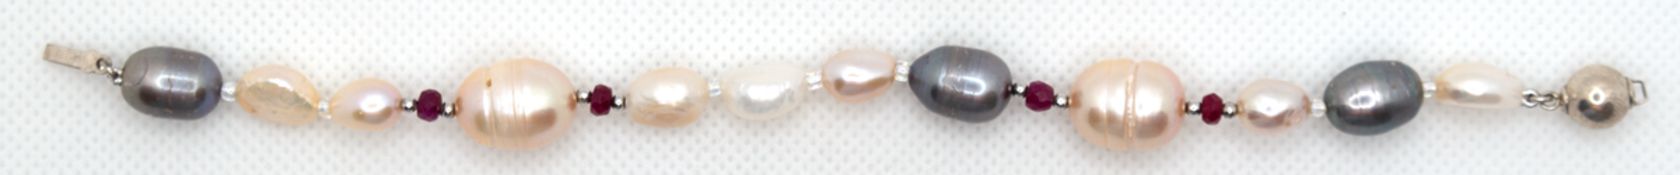 Armband, verschiedenfarbige SW-Perle in unterschiedlichen Größen und echten Rubinen, Zwischenteile